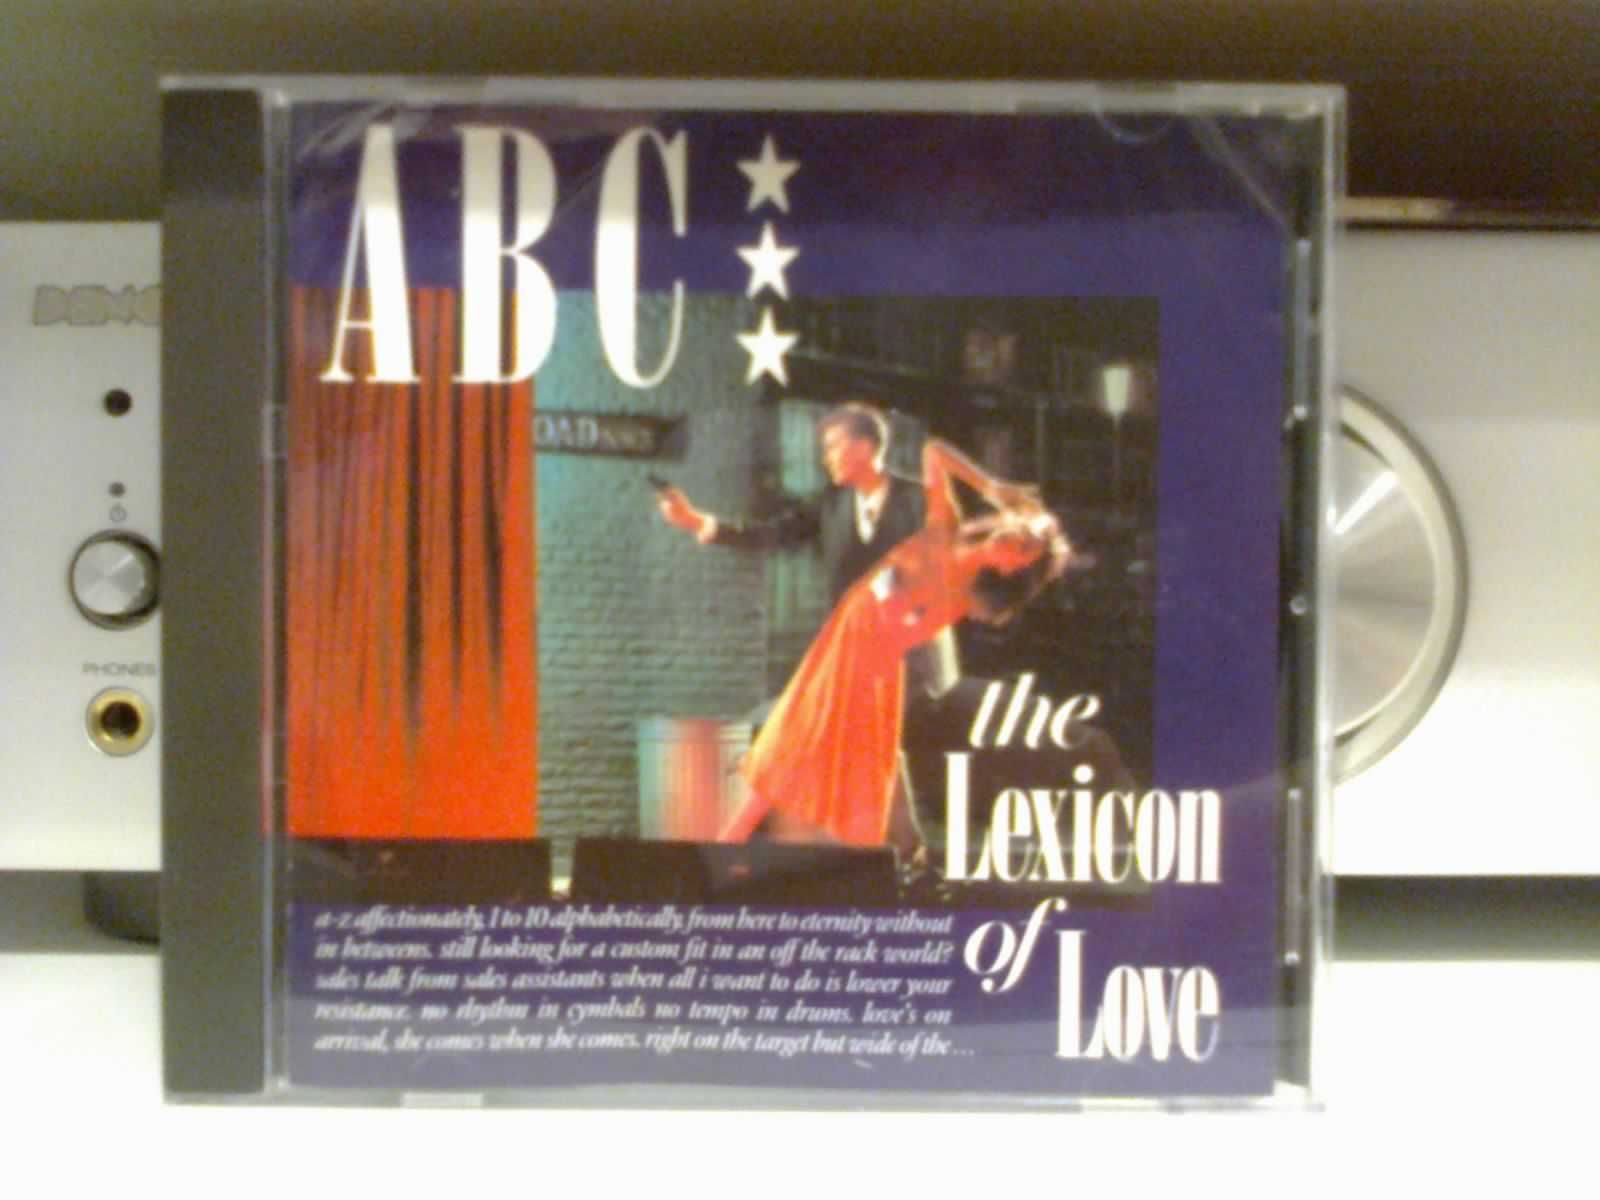 płyta cd grupy abc the lexicon of love orginał